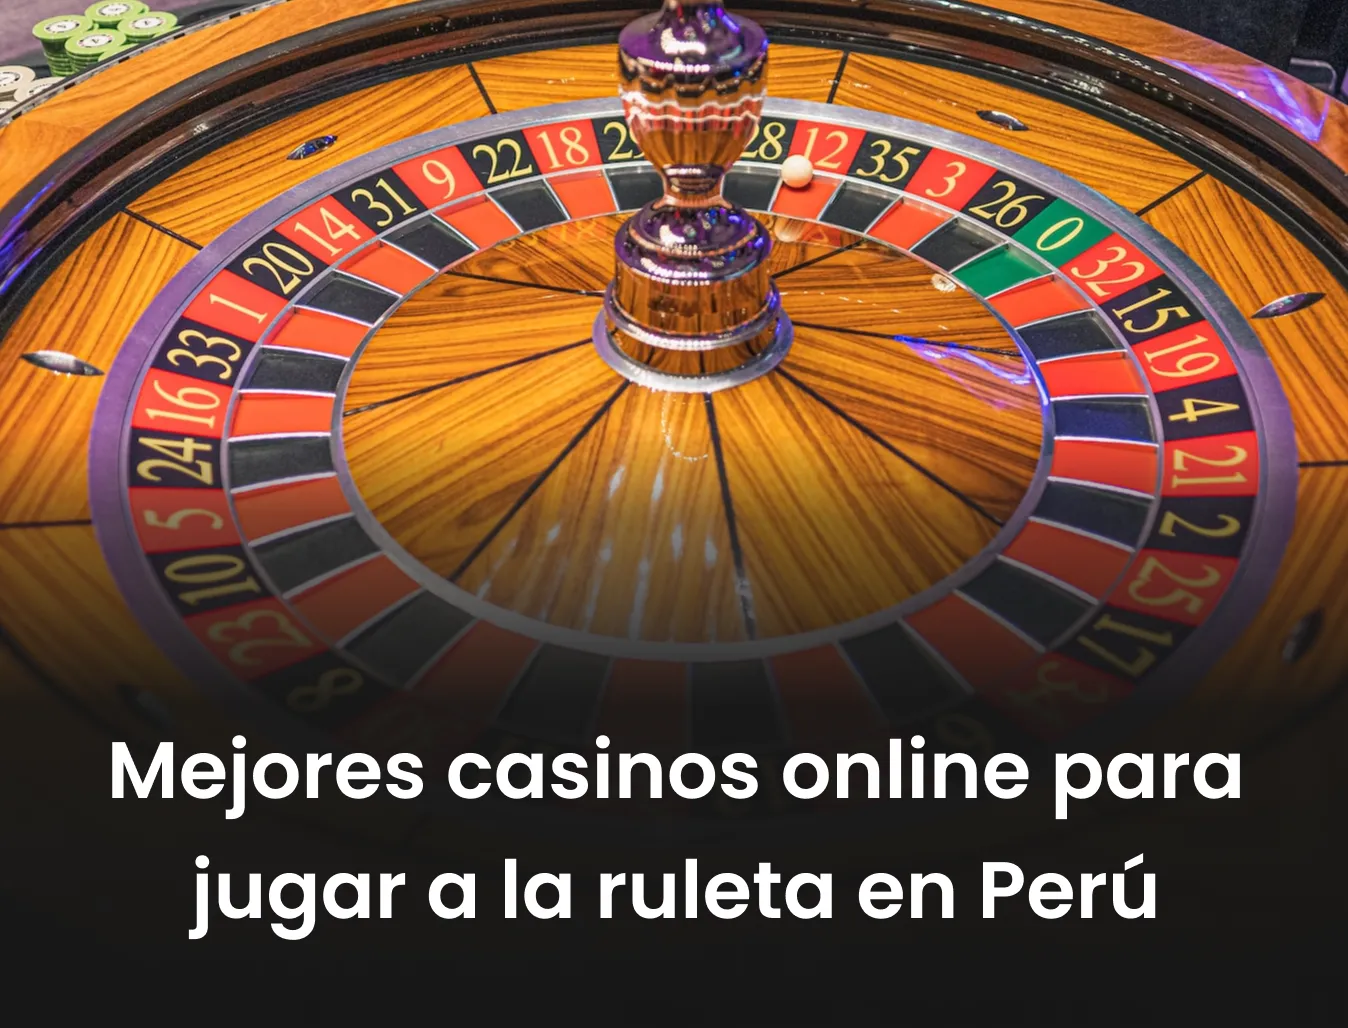 Mejores casinos online para jugar a la ruleta en perú